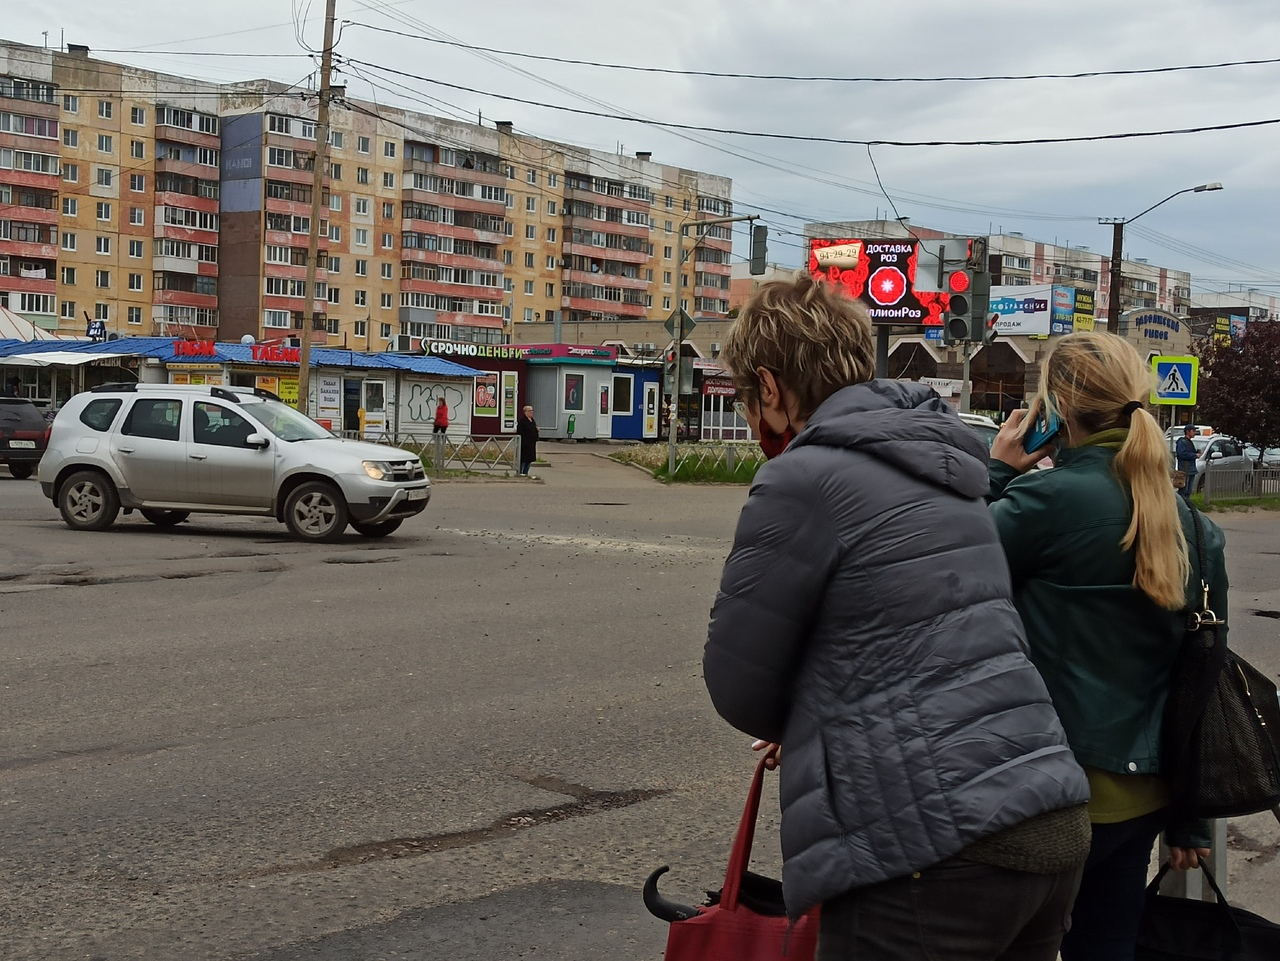 Облака спустятся на землю: экстренное предупреждение от МЧС для Ярославля